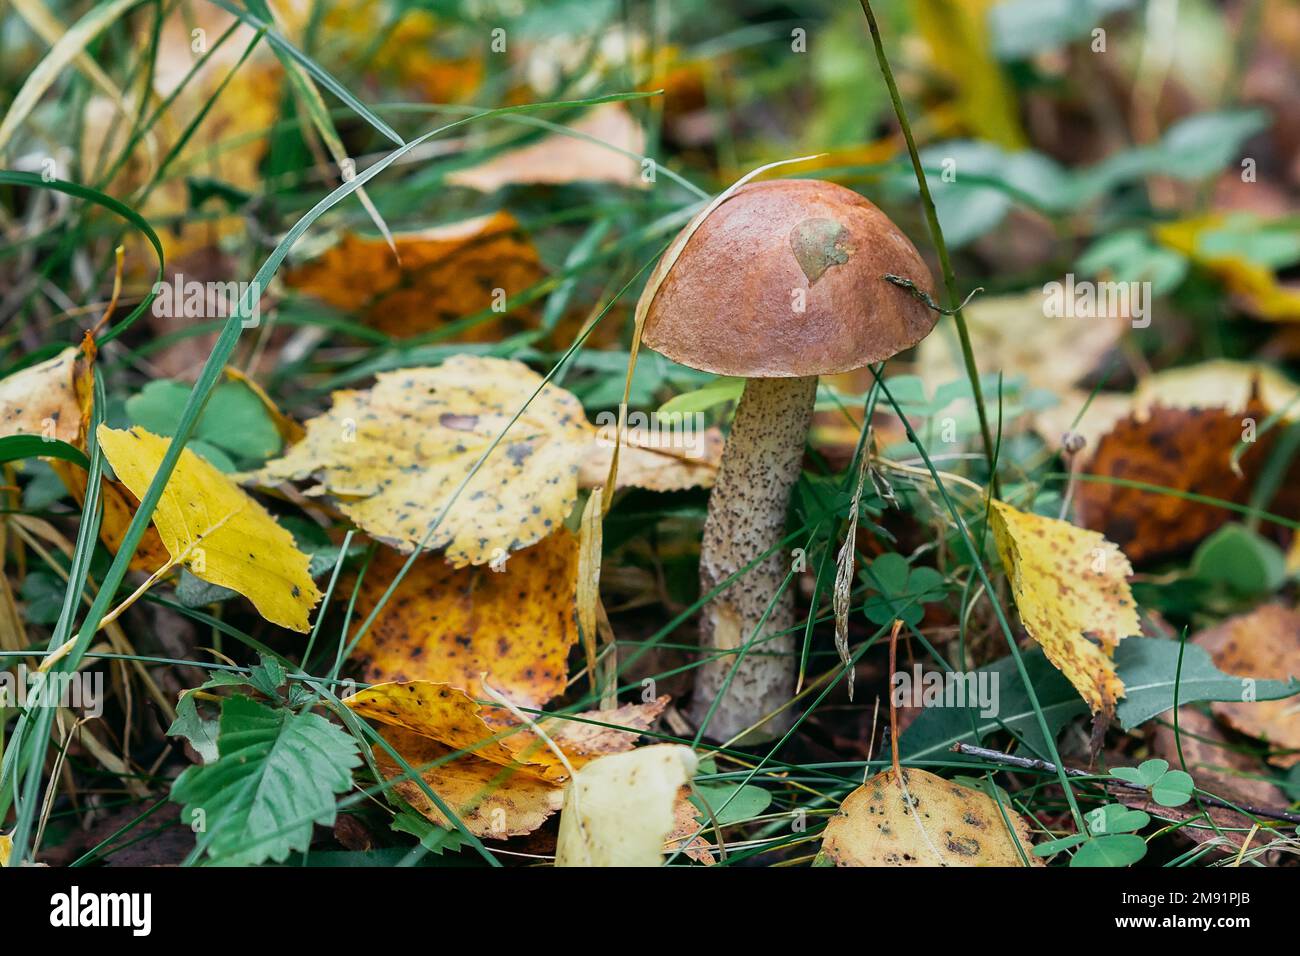 champignons de bouleau dans la forêt dans l'herbe et les feuilles. Champignons comestibles avec chapeau brun régime savoureux en gros plan Banque D'Images